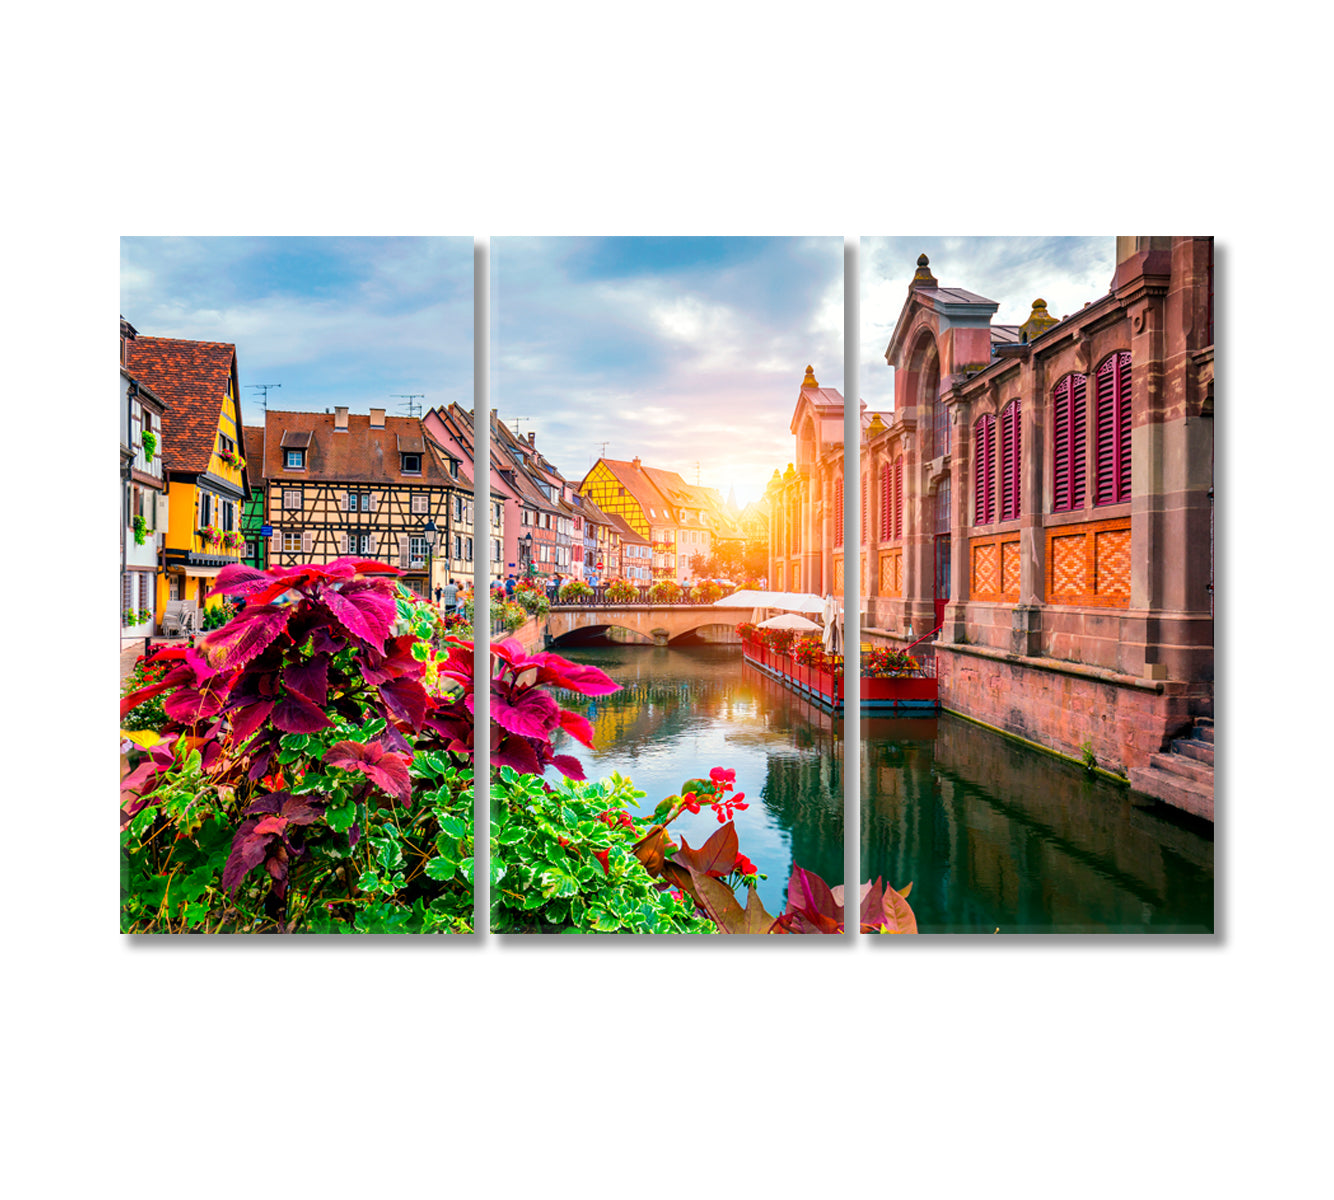 Little Venice Colmar Alsace France Canvas Print-Canvas Print-CetArt-3 Panels-36x24 inches-CetArt